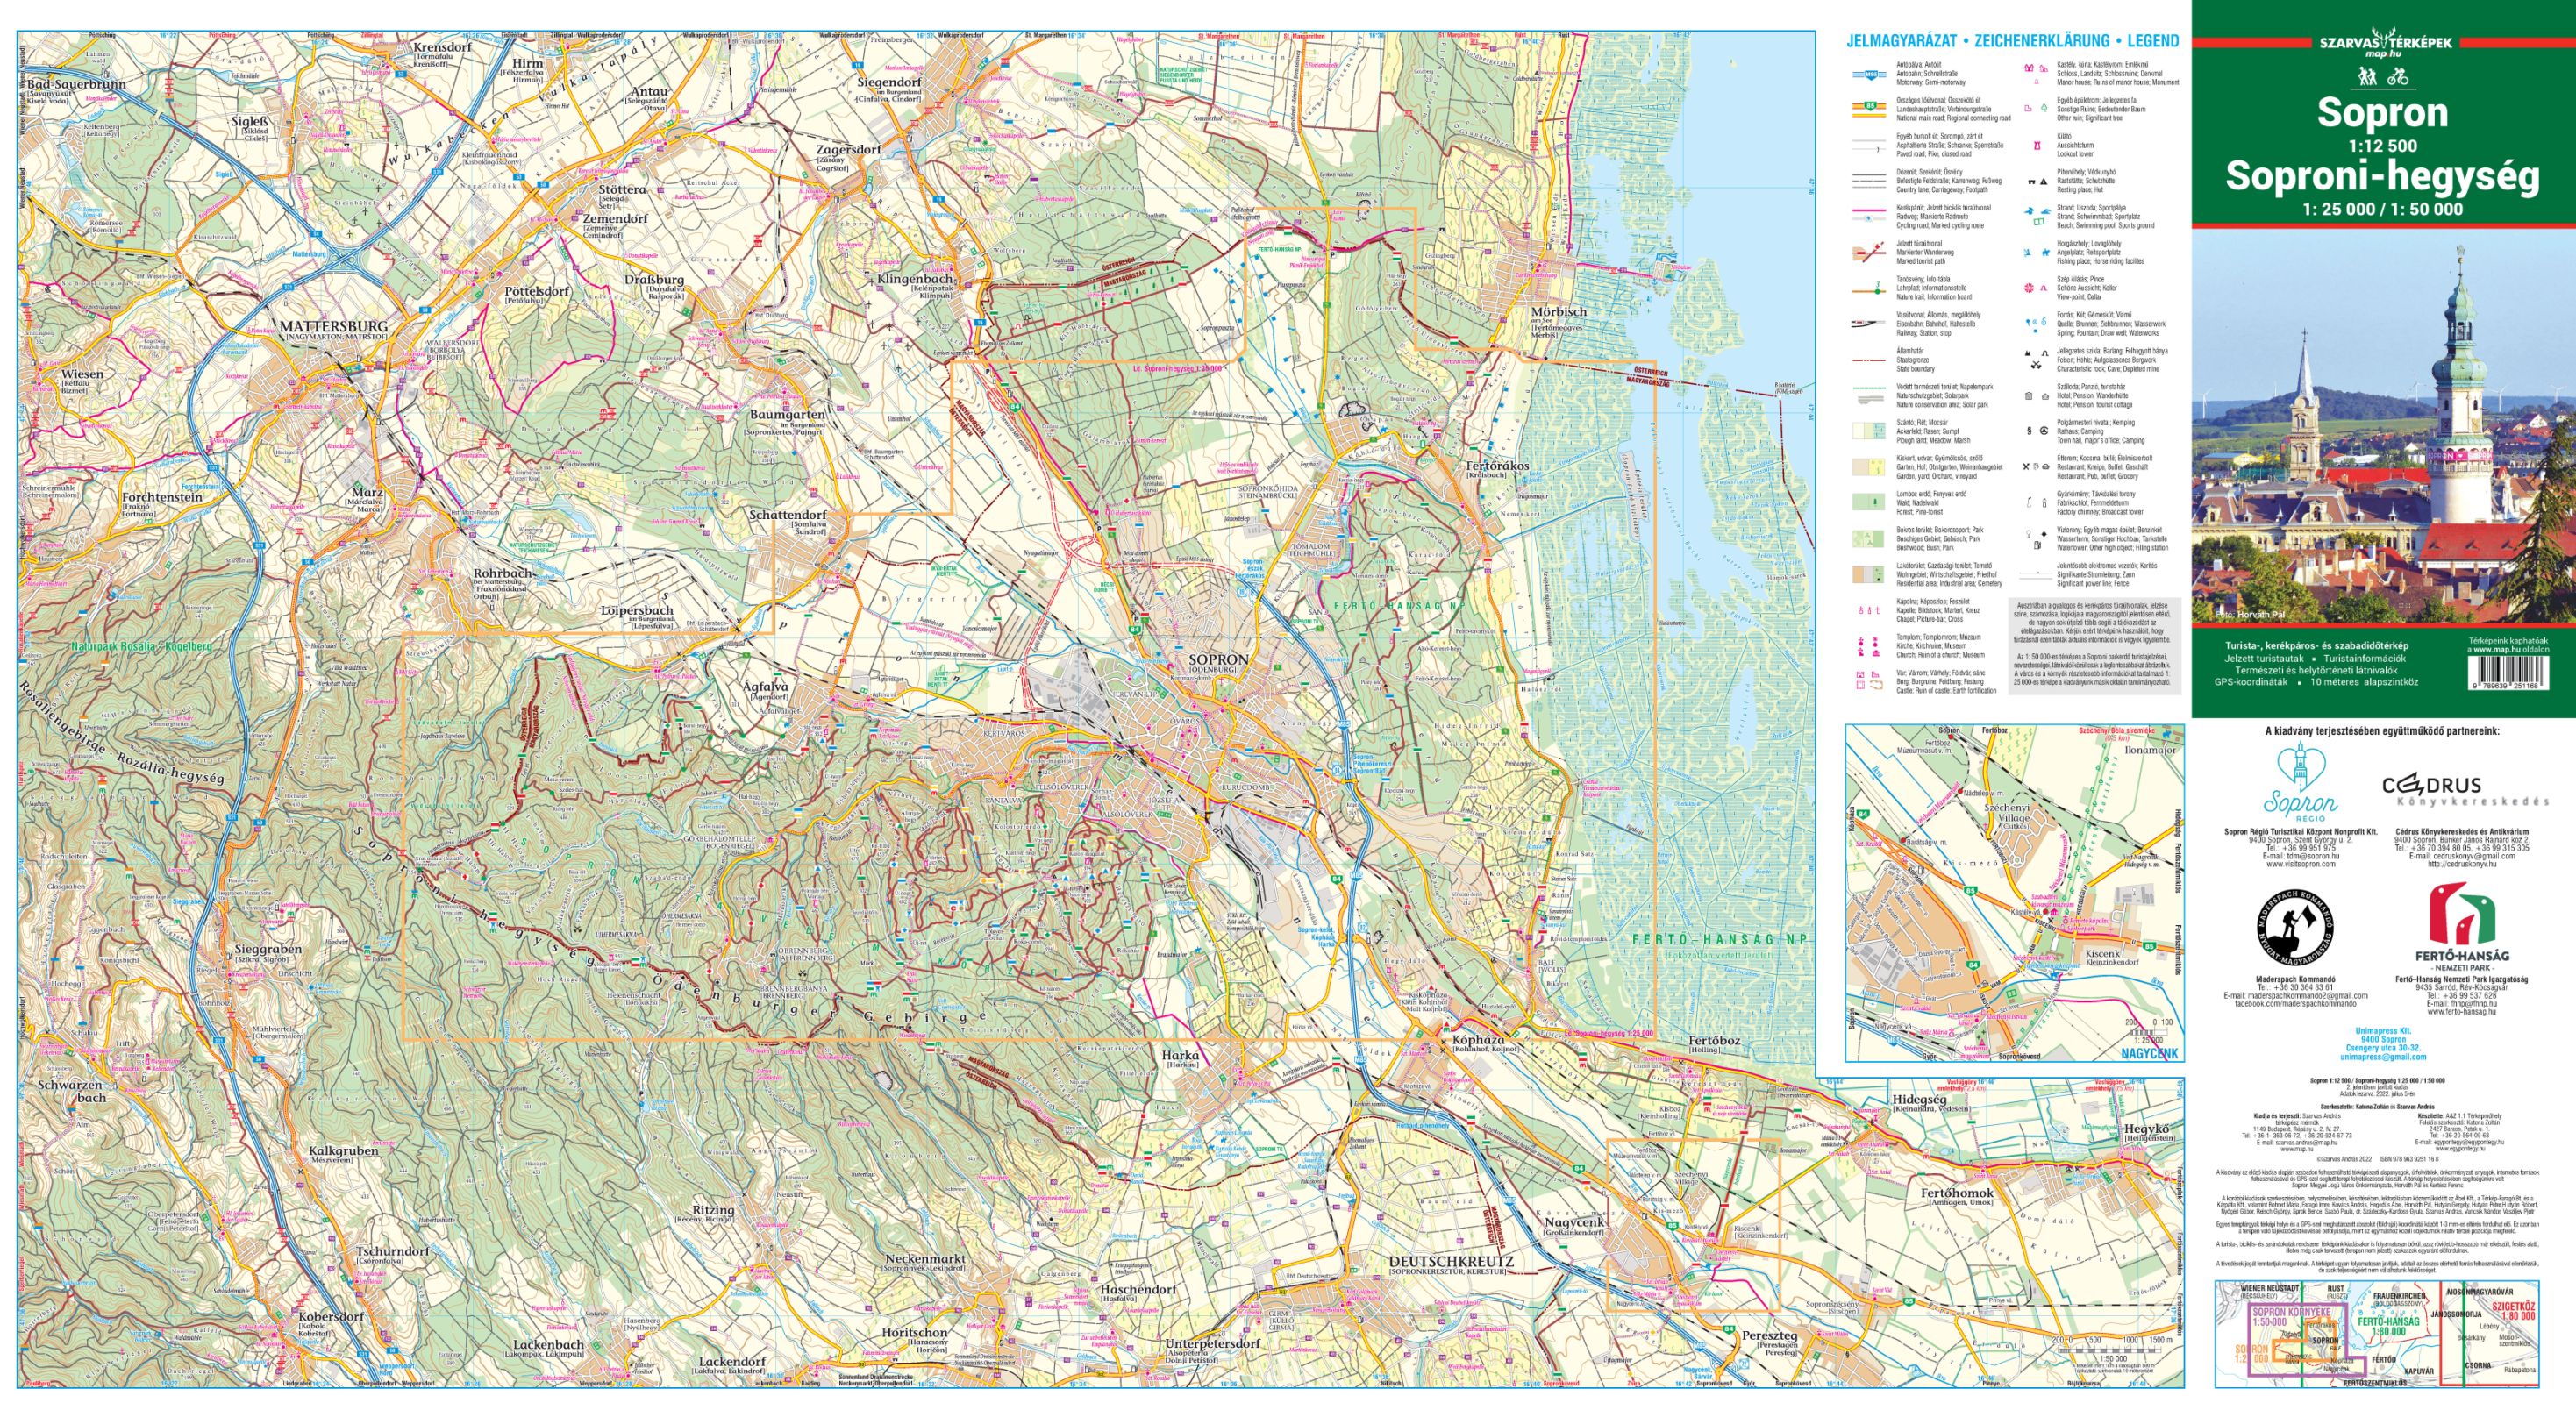 Sopron környéke 1:50.000 térkép által lefedett terület